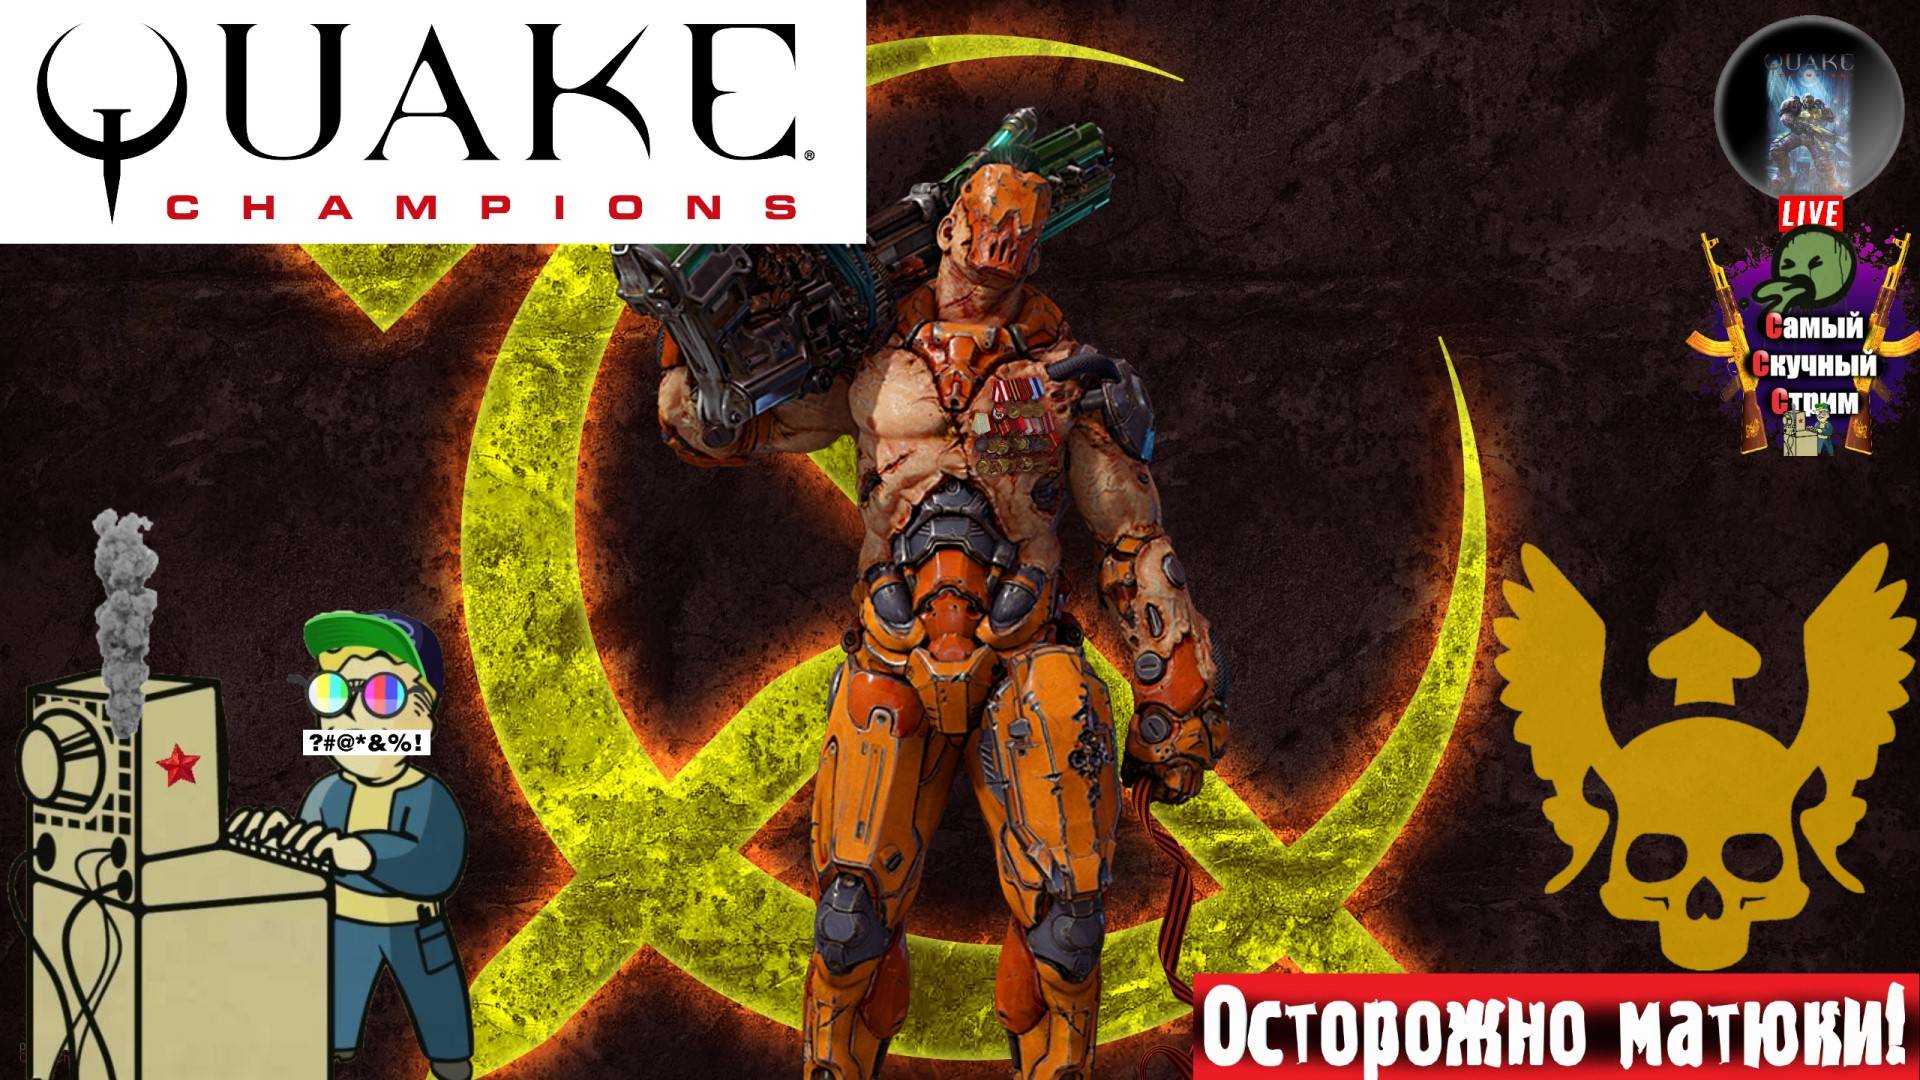 Quake Champions | Квейк Чампионс Квага | Бесит  #quake #стрим #квейк